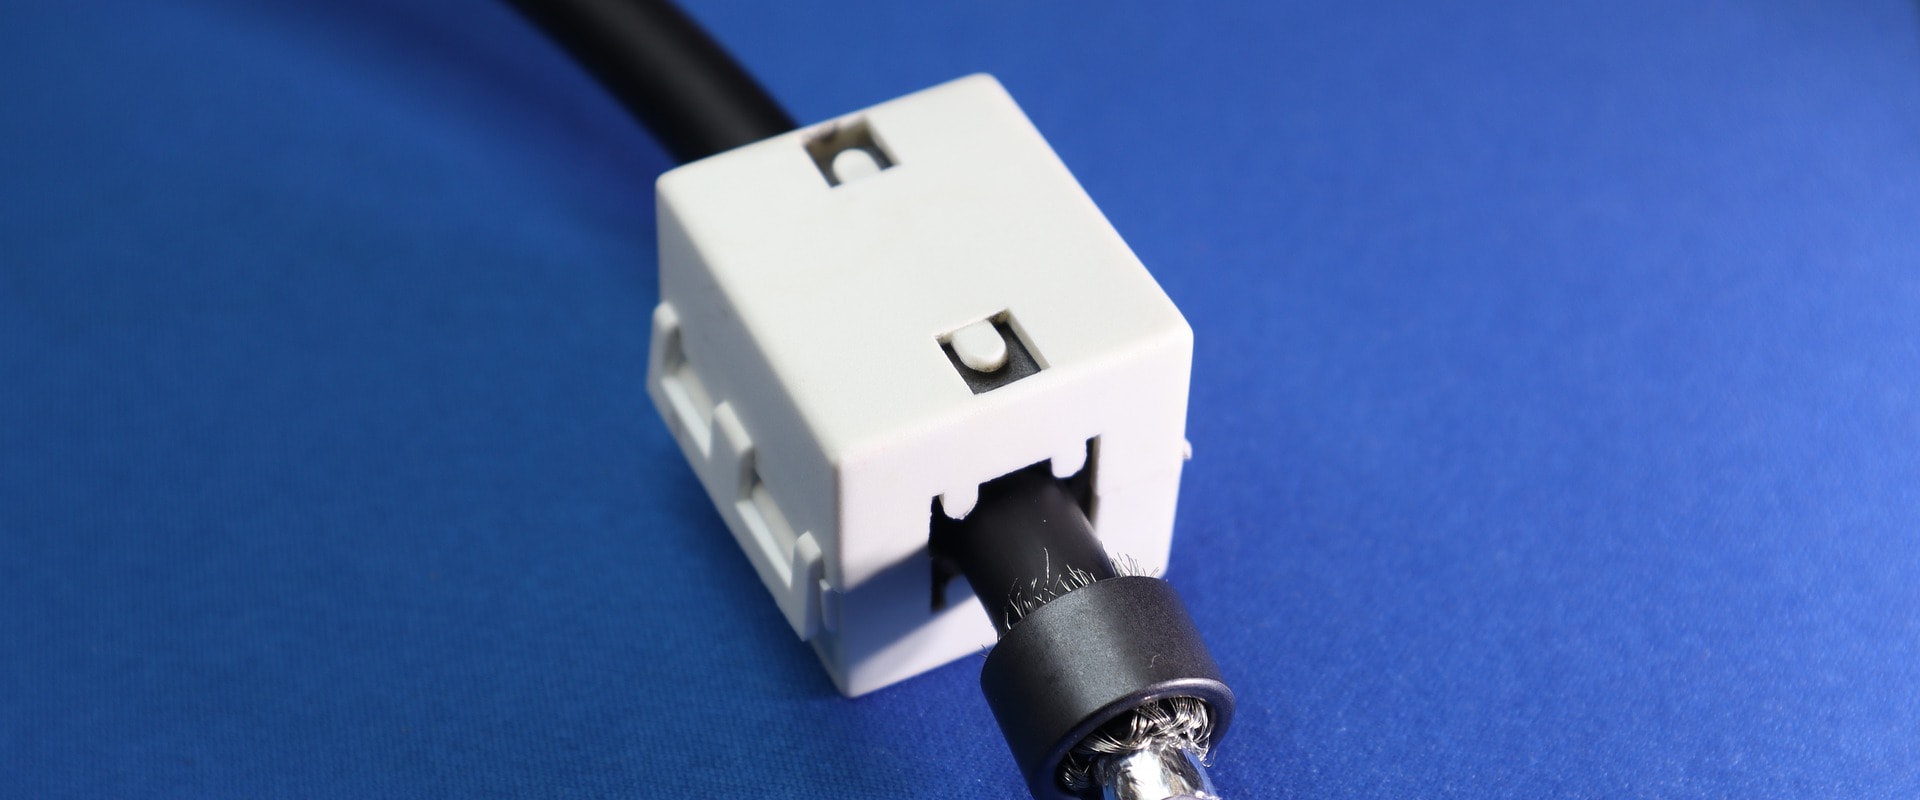 Înțelegerea cablurilor coaxiale pentru conexiunile de frecvență radio